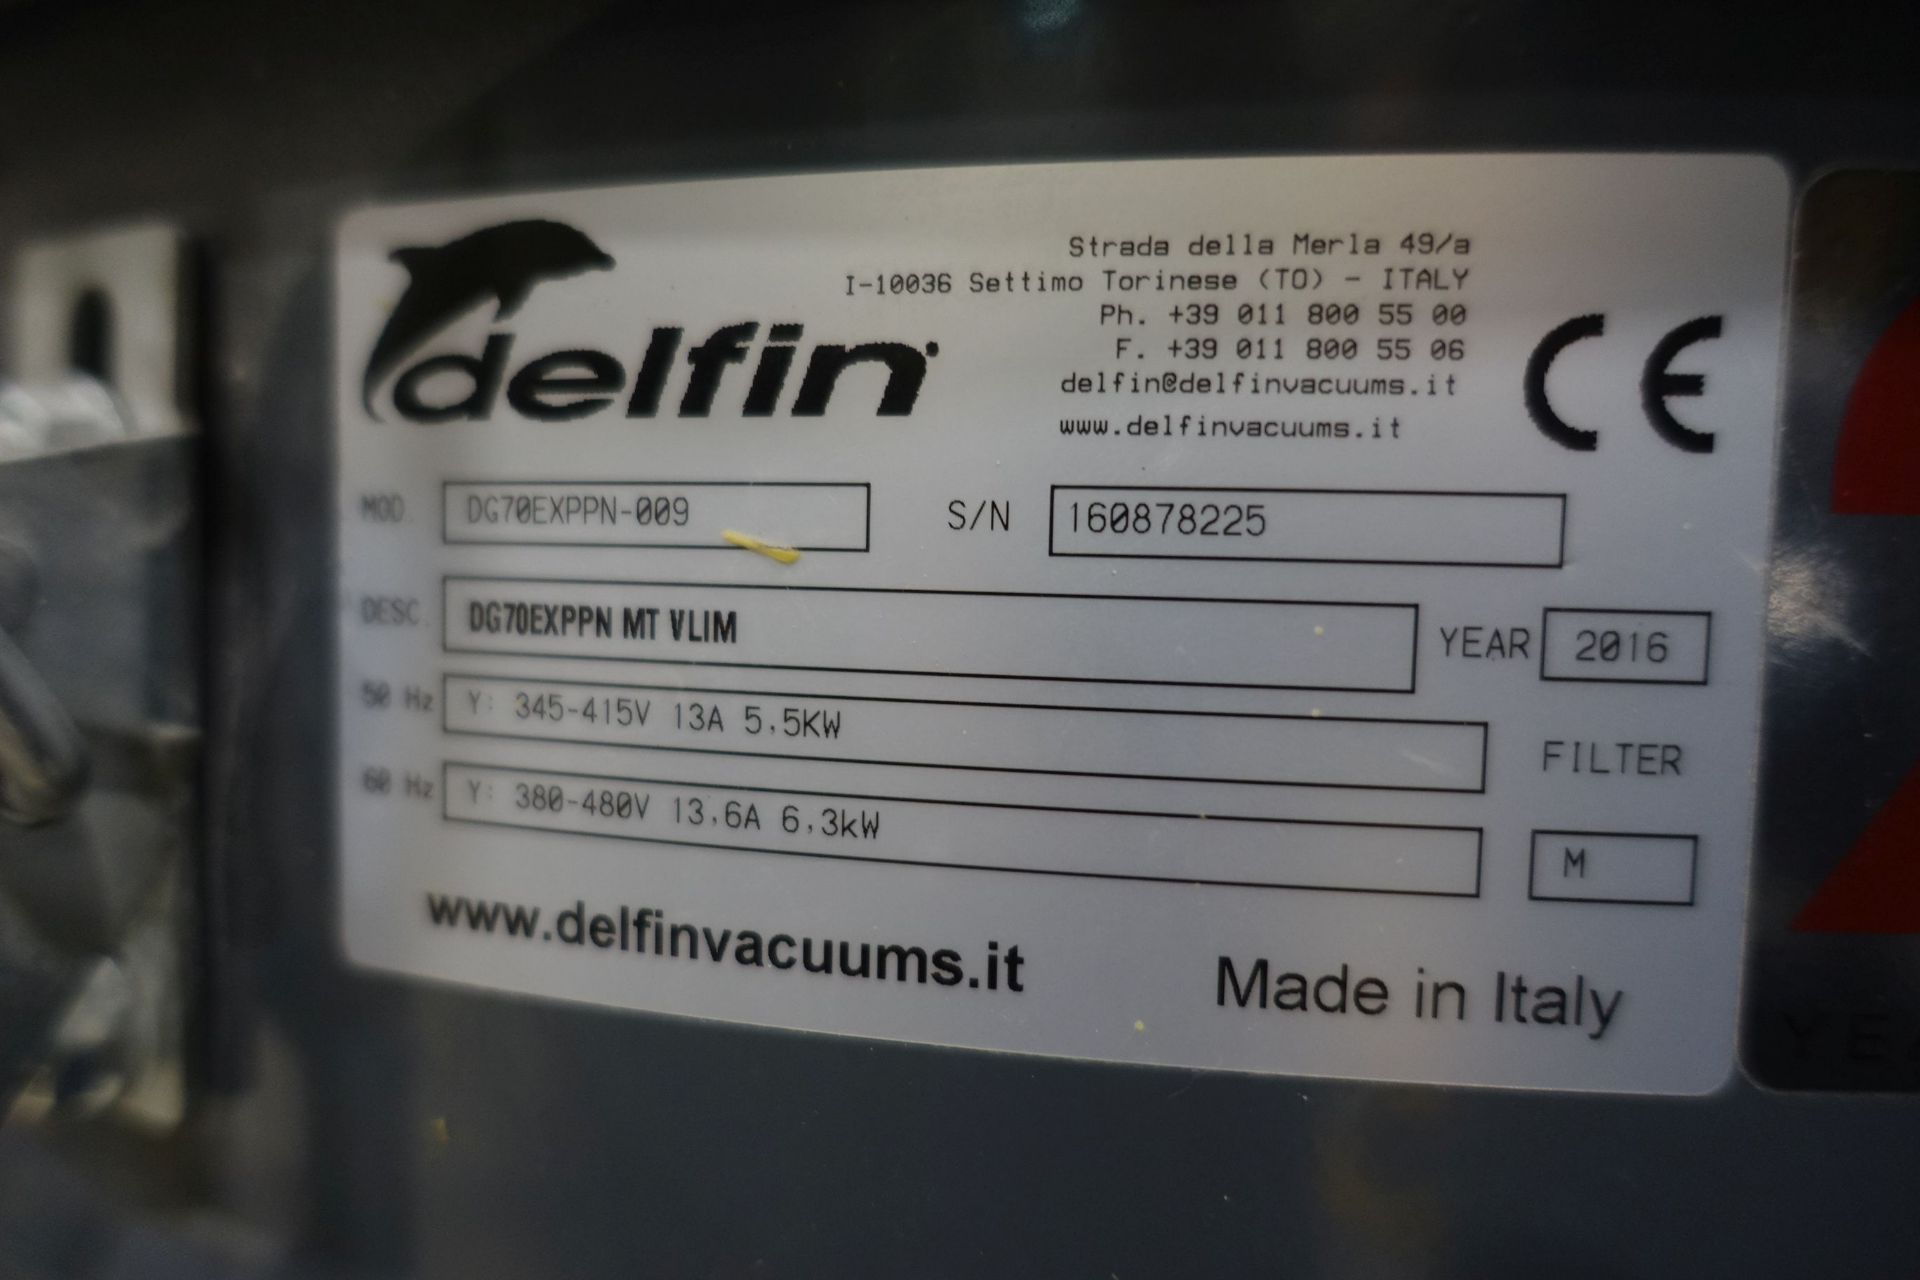 DELFIN DG70EXPPN Industrial Vaccum Cleaner(2016), Ser # 160878225, Asset # 2000029 - Image 11 of 12